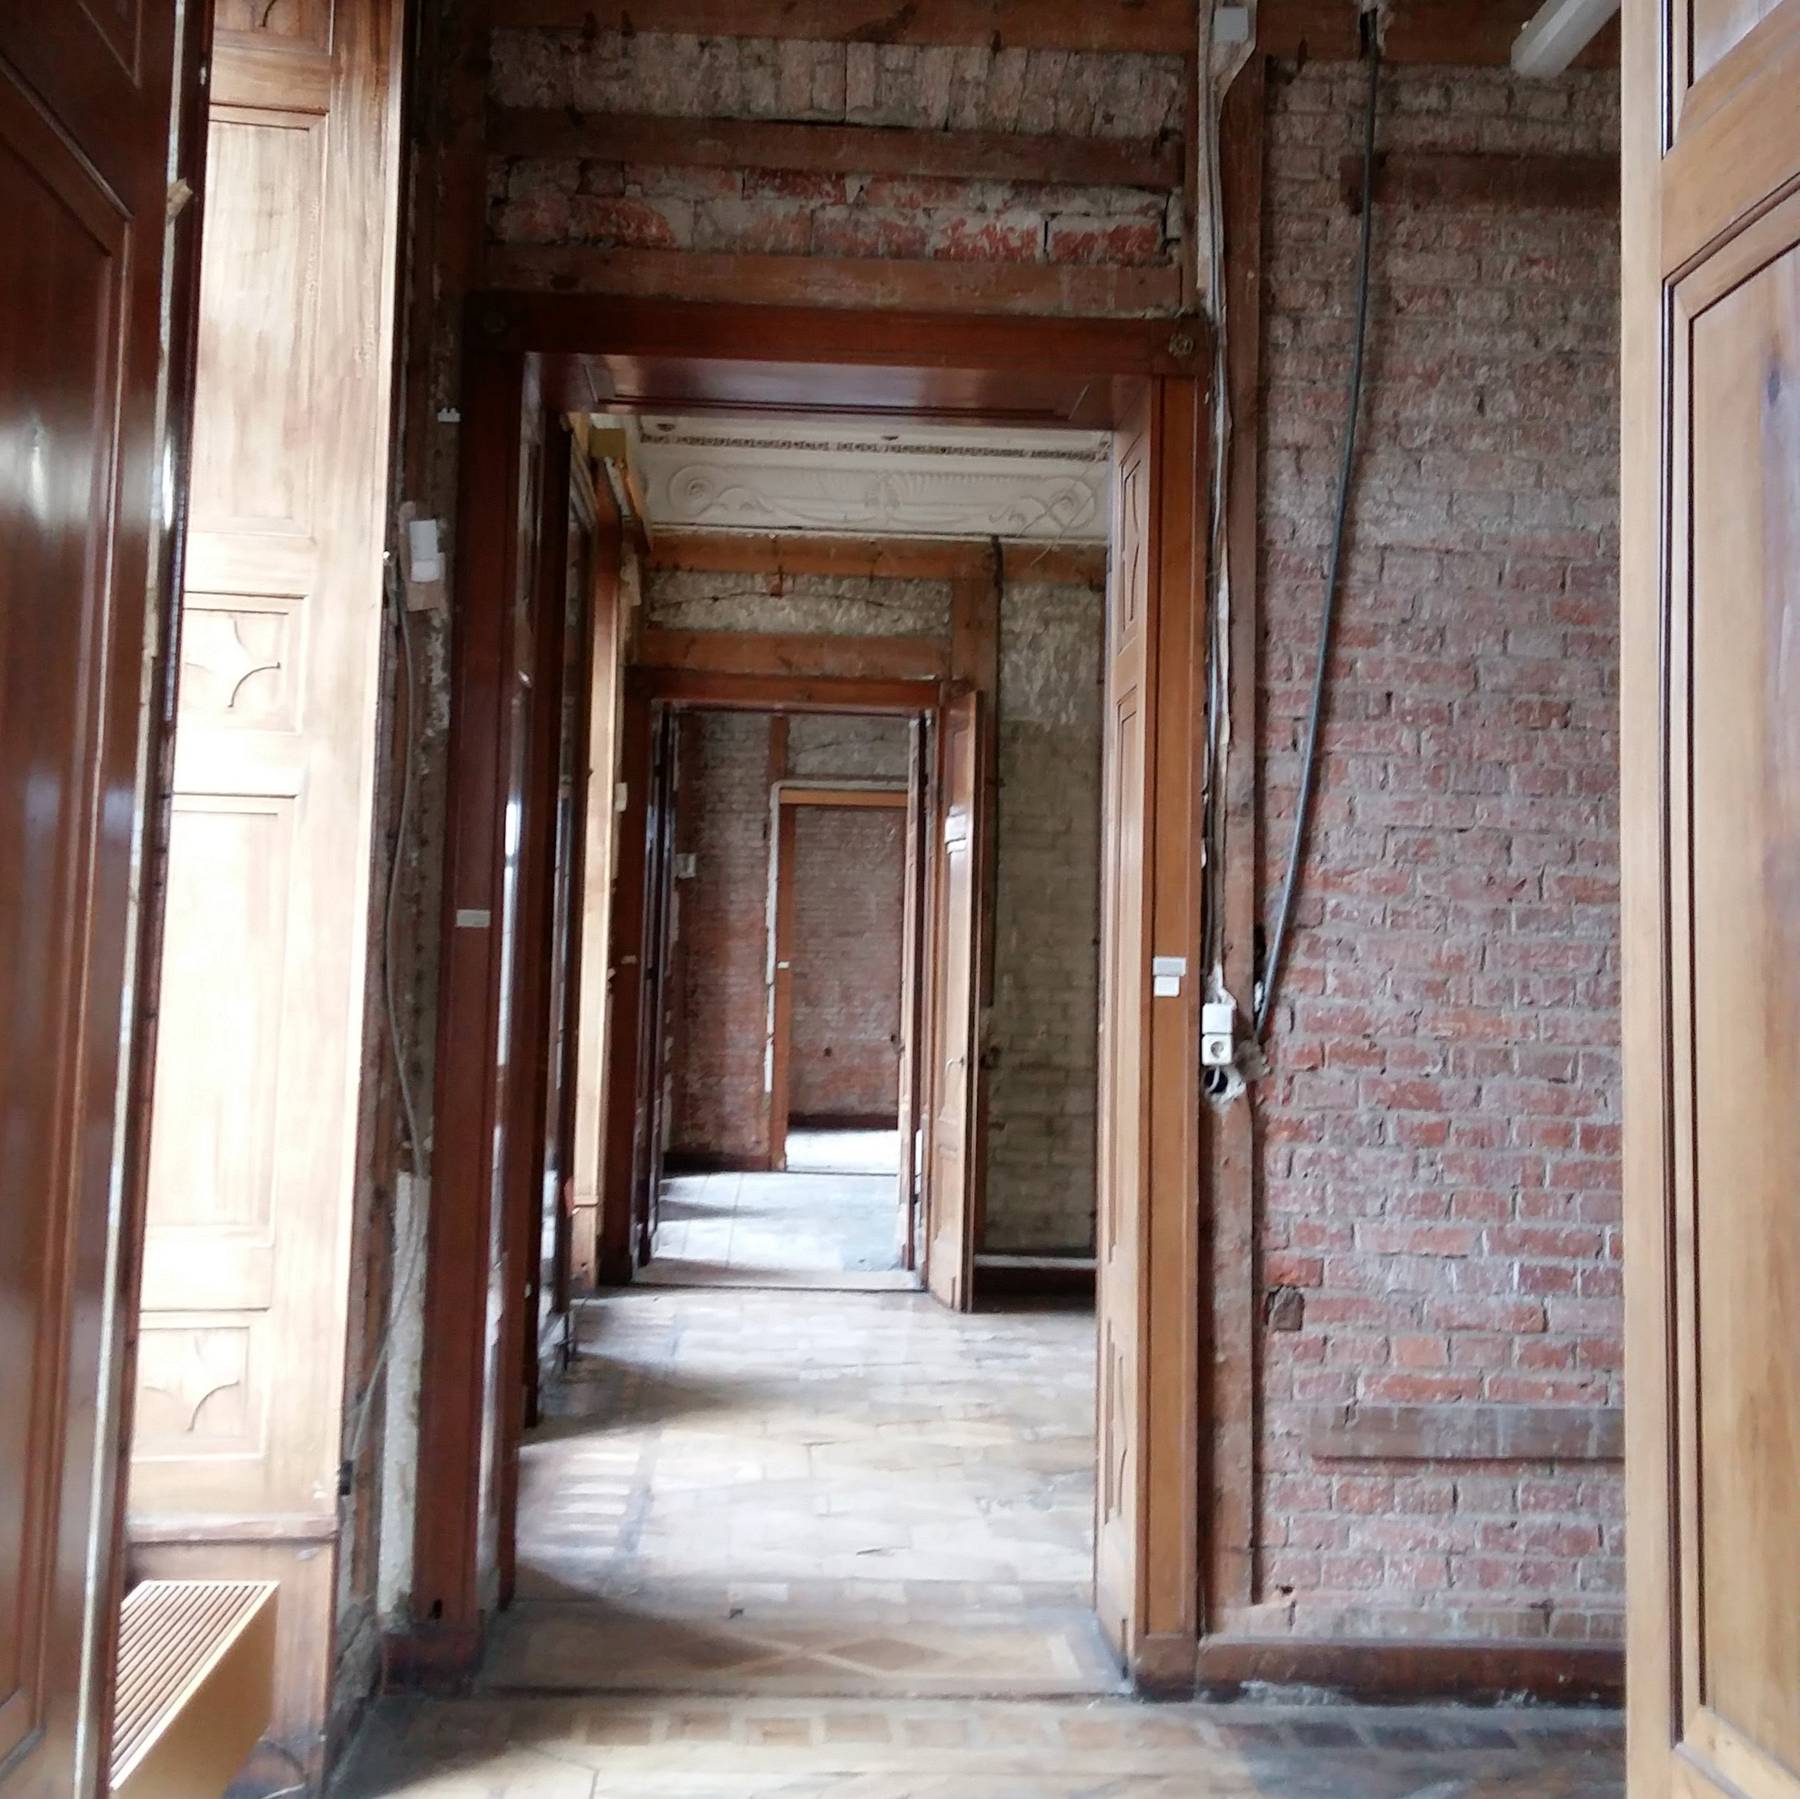 Enfilade - der Blick durch die Rahmen der Türen mehrerer Zimmer, die hintereinander liegen. Die Türen werden aufwendig restauriert. © 2021 SBL Schwerin